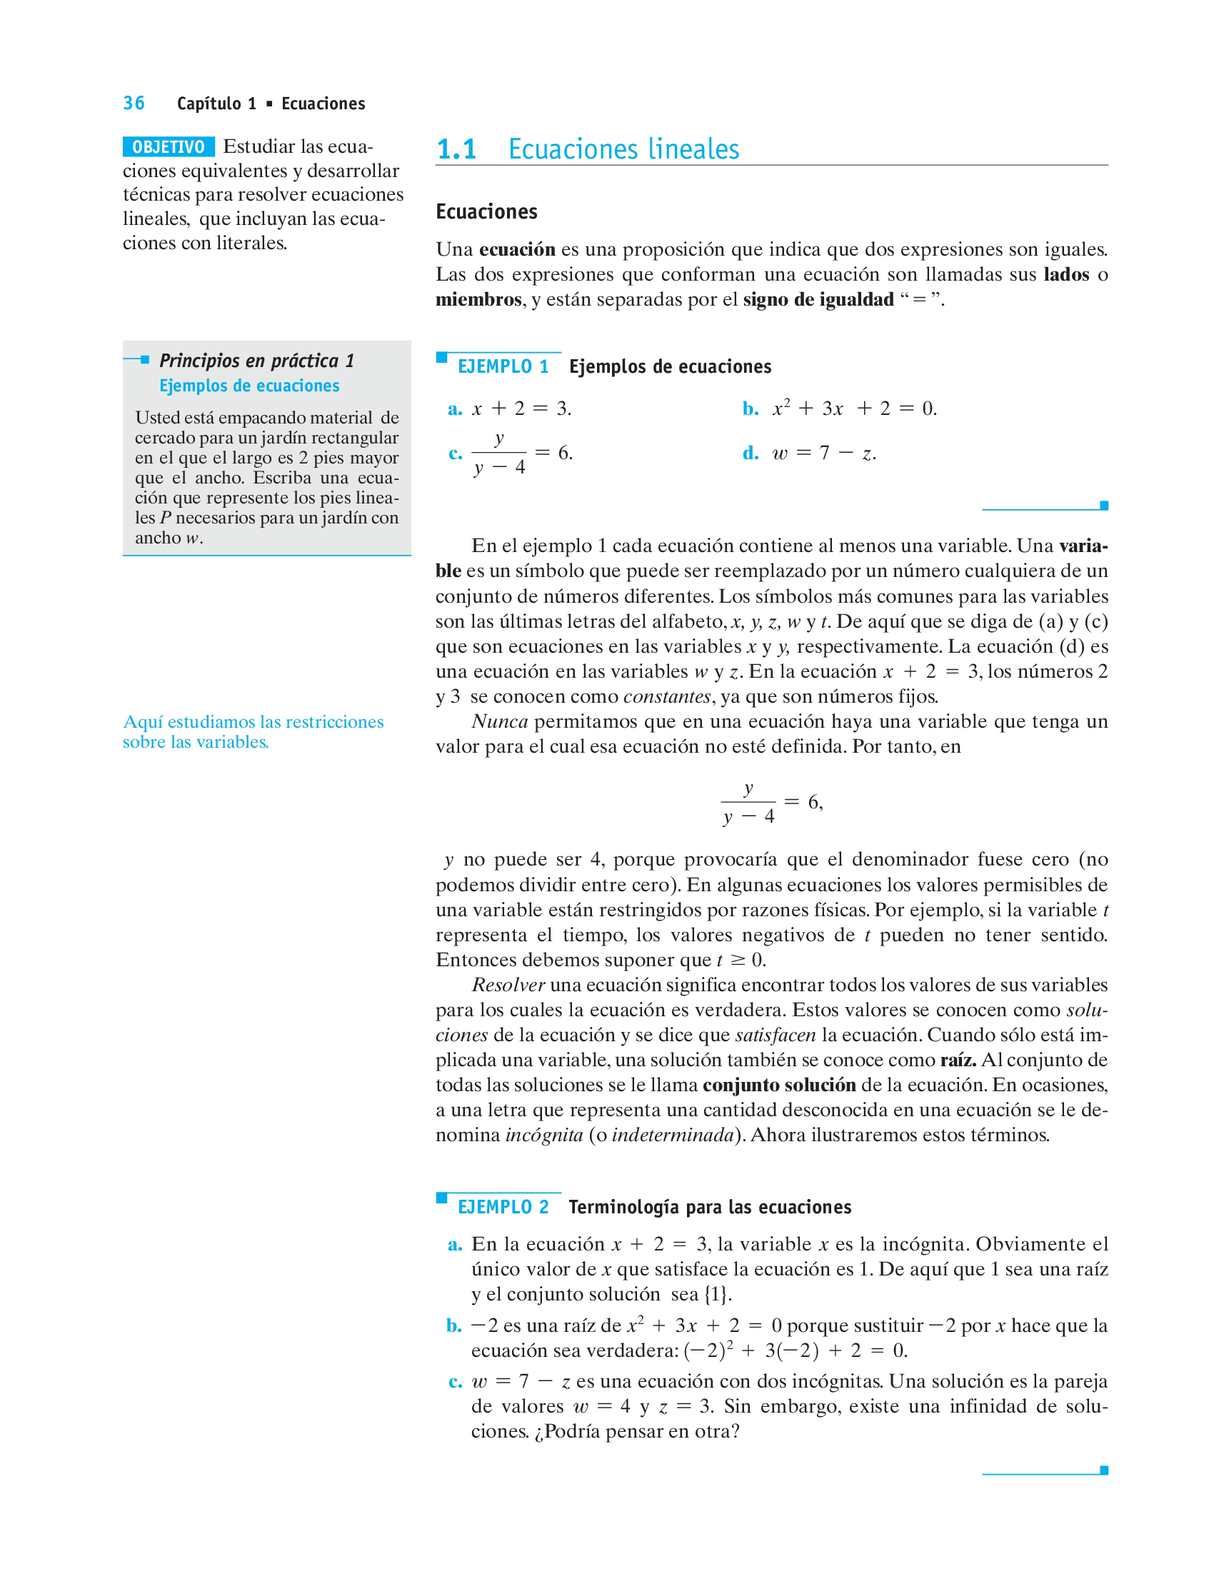 8.5: Resolver ecuaciones con variables y constantes en ambos lados (Parte 2)